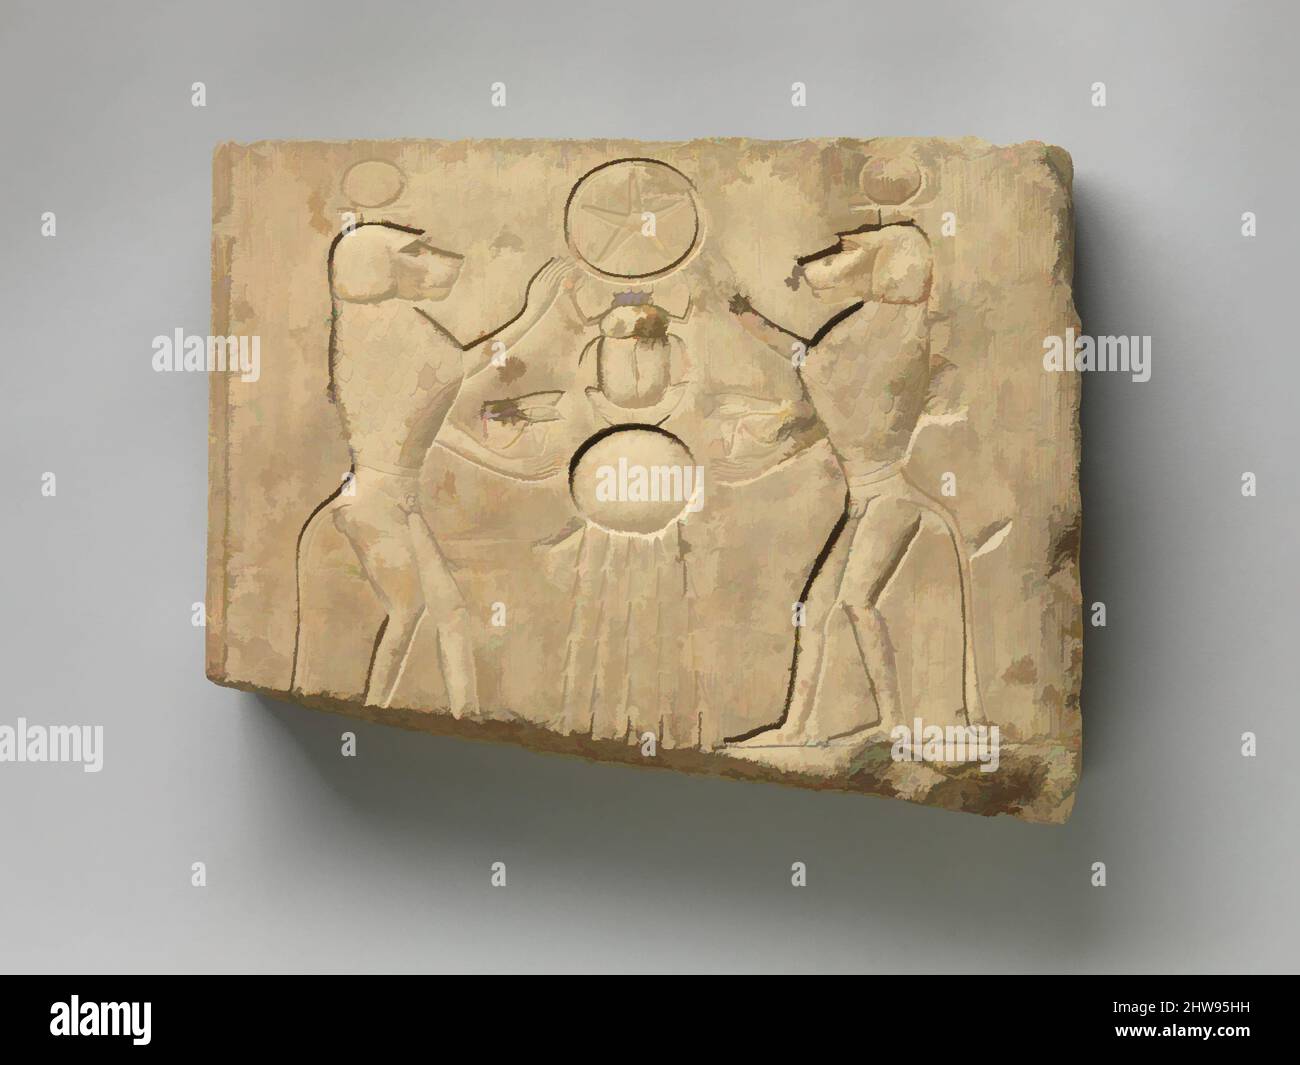 Arte ispirata dal pannello di rilievo che mostra due babbuini che offrono l'occhio del matrimonio al Dio del sole Khepri, che detiene il segno Underworld, periodo tardo-periodo tolemaico, 400–200 AC, dall'Egitto, calcare, H. 30,9 cm (12 3/16 poll.); W. 39,3 cm (15 1/2 poll.); D. 6 cm (2 3/8 poll.), in questa scena, due, opere classiche modernizzate da Artotop con un tuffo di modernità. Forme, colore e valore, impatto visivo accattivante sulle emozioni artistiche attraverso la libertà delle opere d'arte in modo contemporaneo. Un messaggio senza tempo che persegue una nuova direzione selvaggiamente creativa. Artisti che si rivolgono al supporto digitale e creano l'NFT Artotop Foto Stock